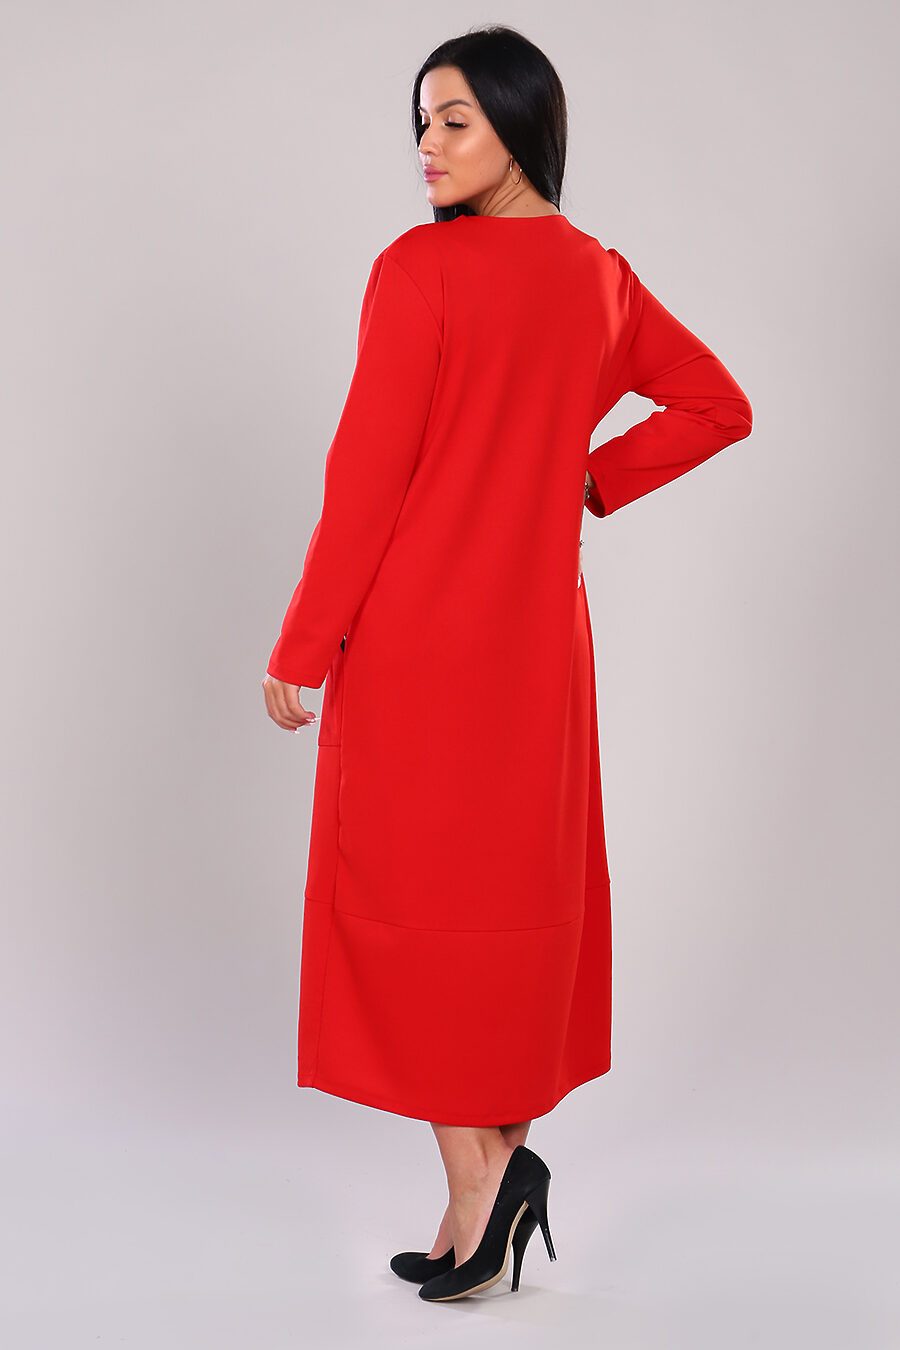 Платье 31592 для женщин НАТАЛИ 741200 купить оптом от производителя. Совместная покупка женской одежды в OptMoyo